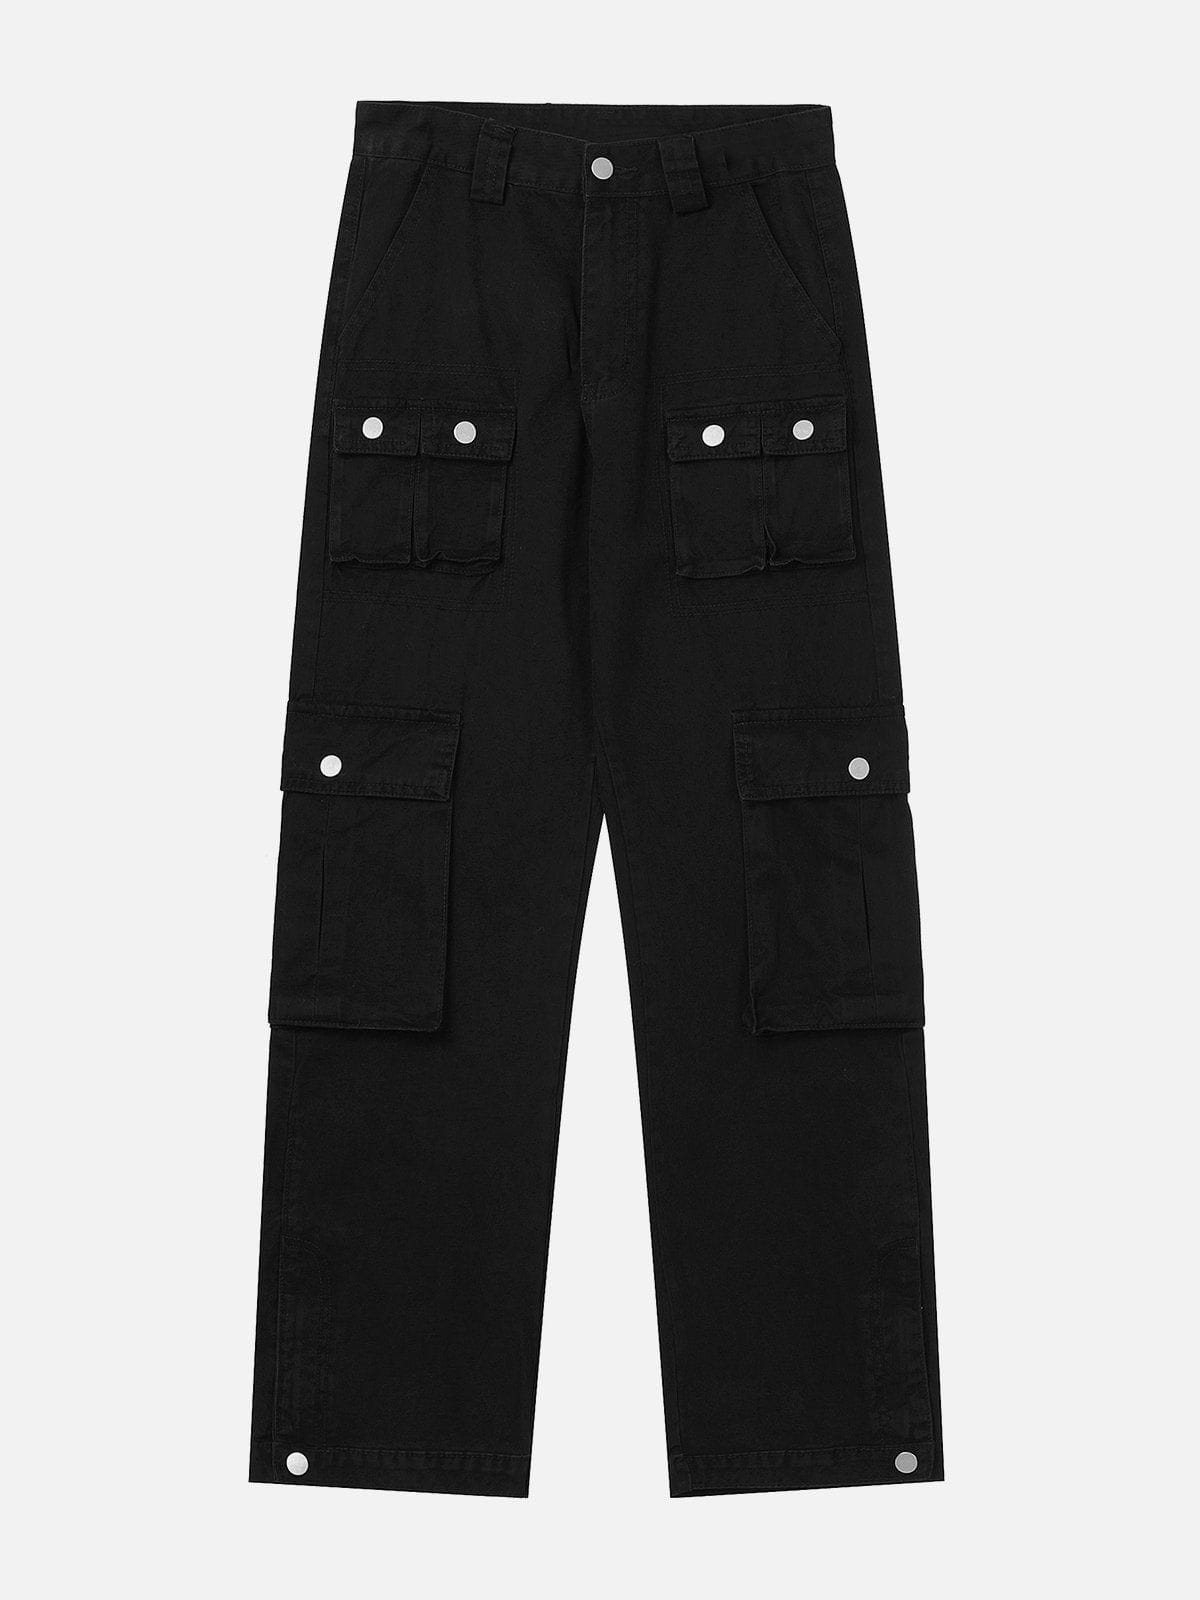 Eprezzy® - Multi Pocket Denim Cargo Pants Streetwear Fashion - eprezzy.com